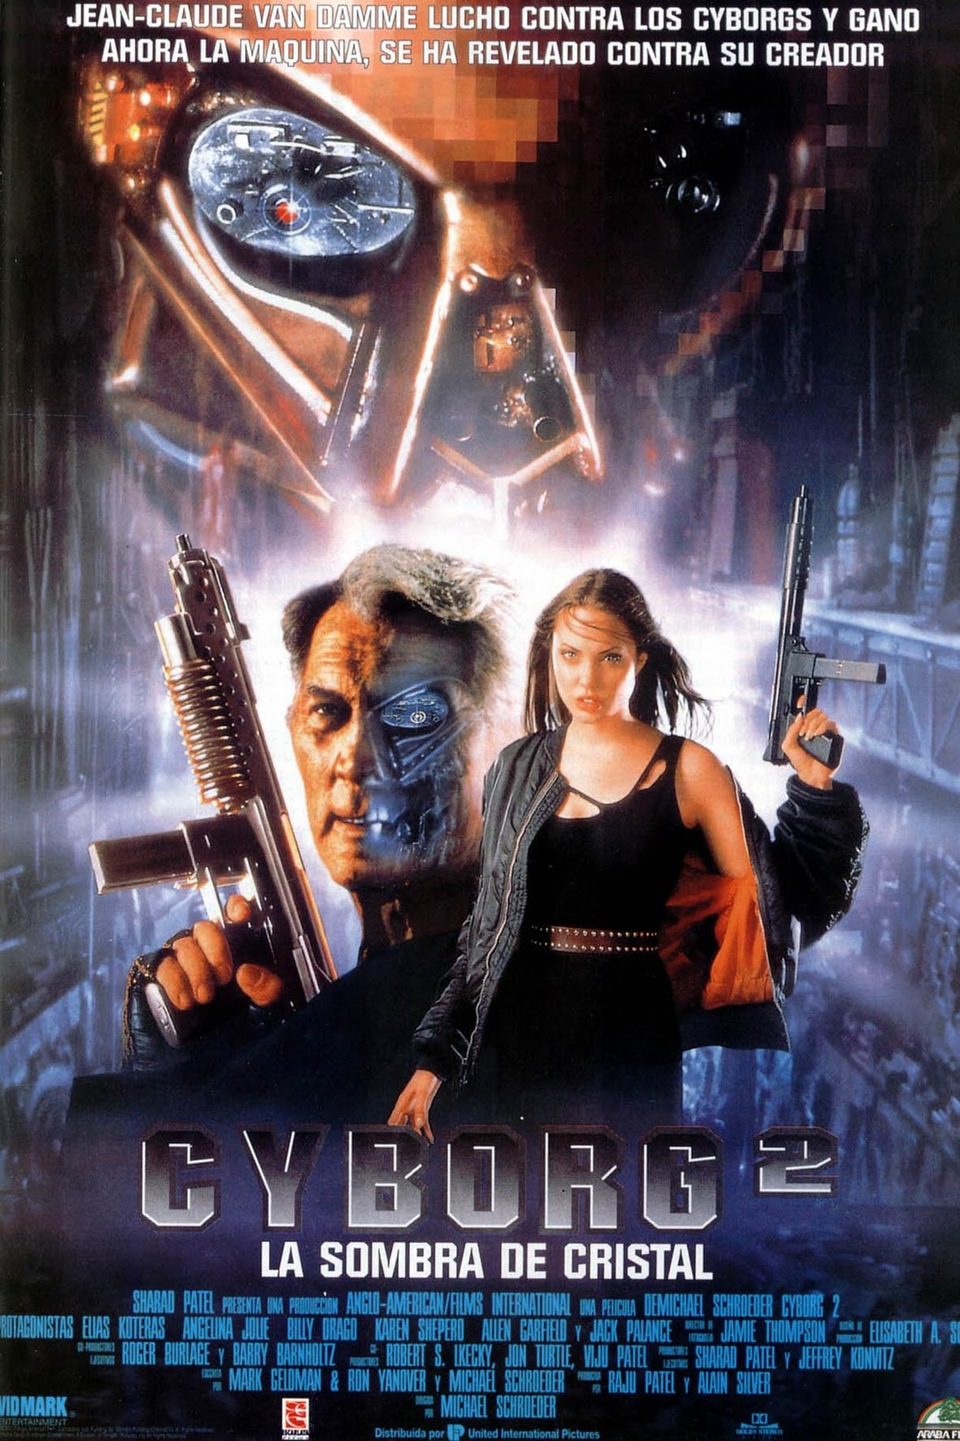 Poster of Cyborg 2 - España